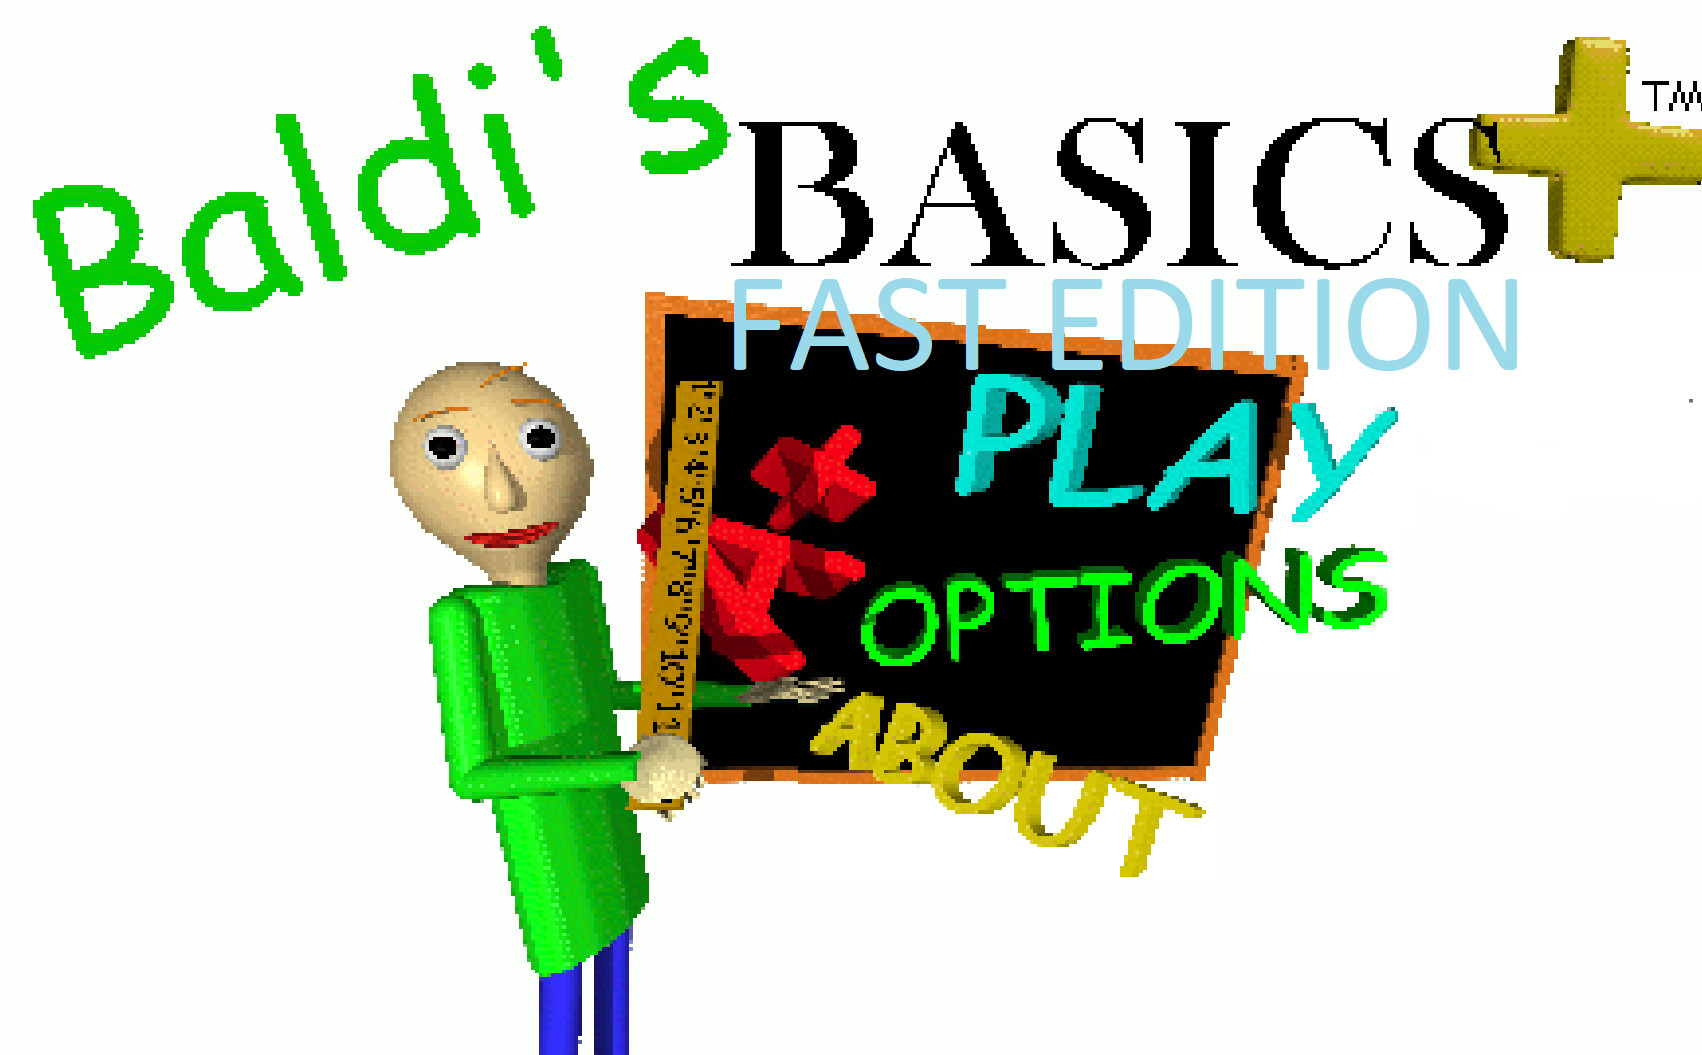 Baldi Basics Plus 0.4.1. Baldi Basics Plus. Baldi's Basics Classic. Baldi's Basics Plus without Baldi.